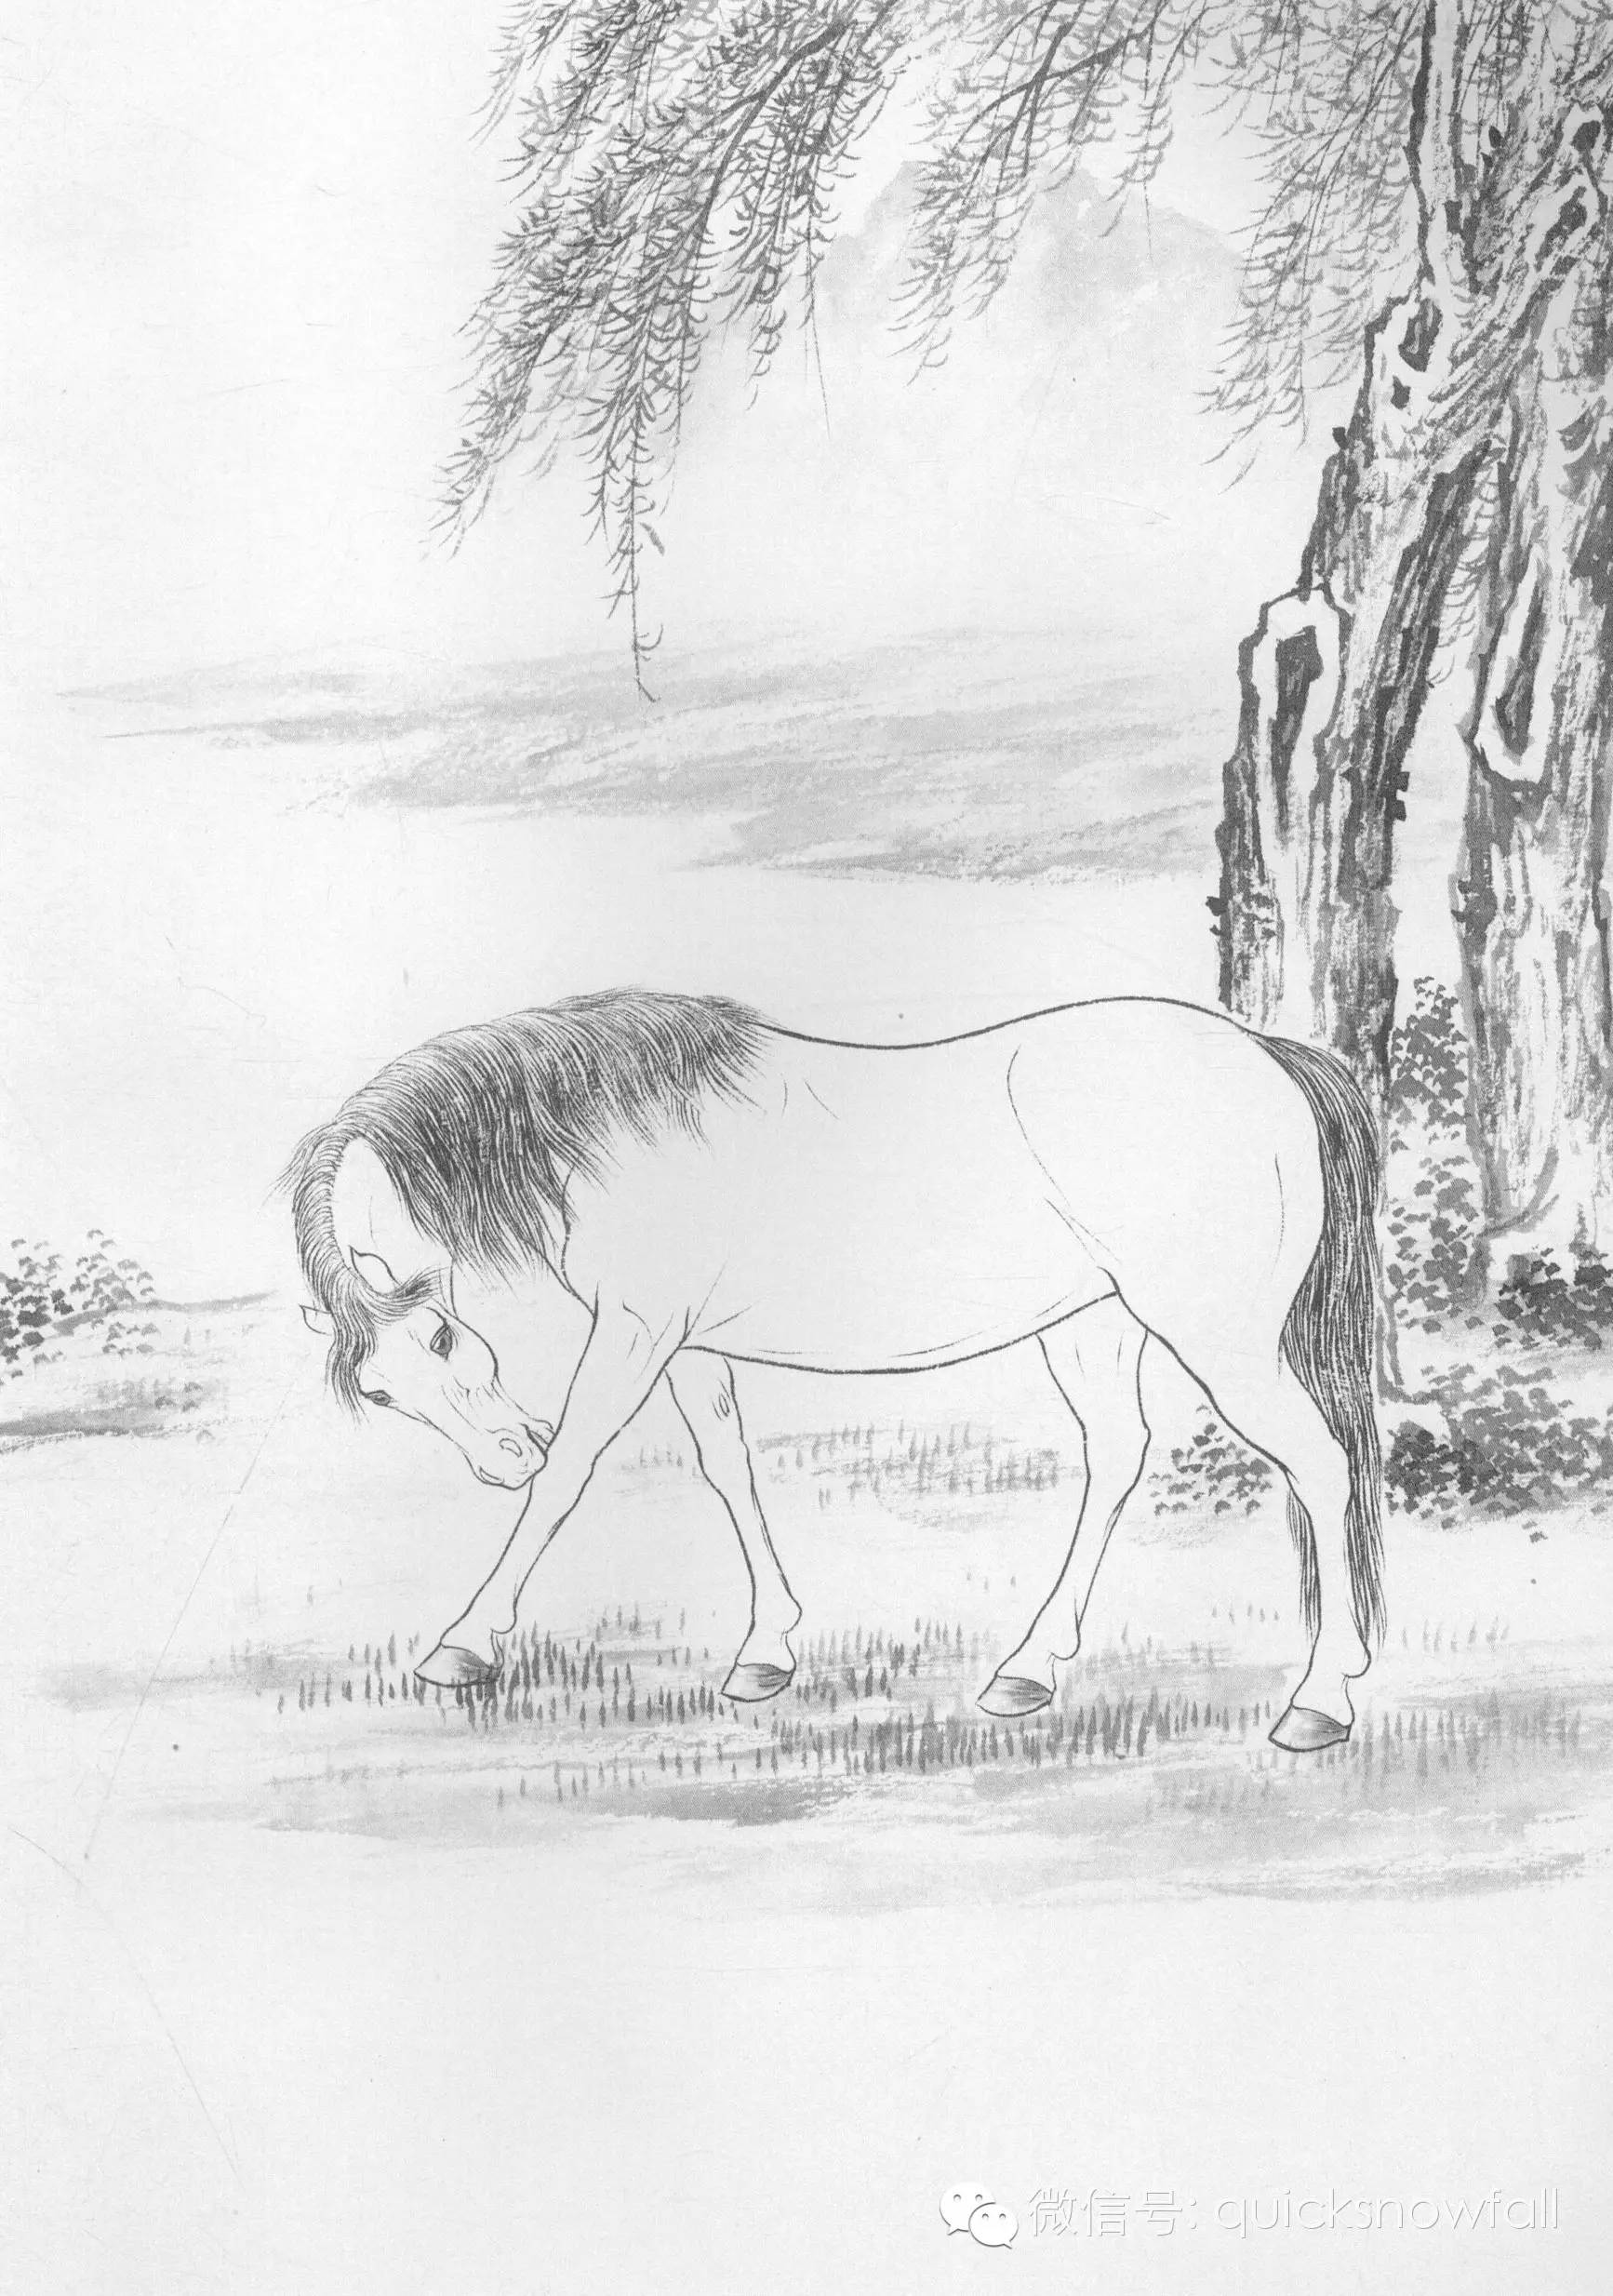 三,工笔画线描动物画谱:骏马篇步骤五:枣红马用调好的颜色罩染,斑马用